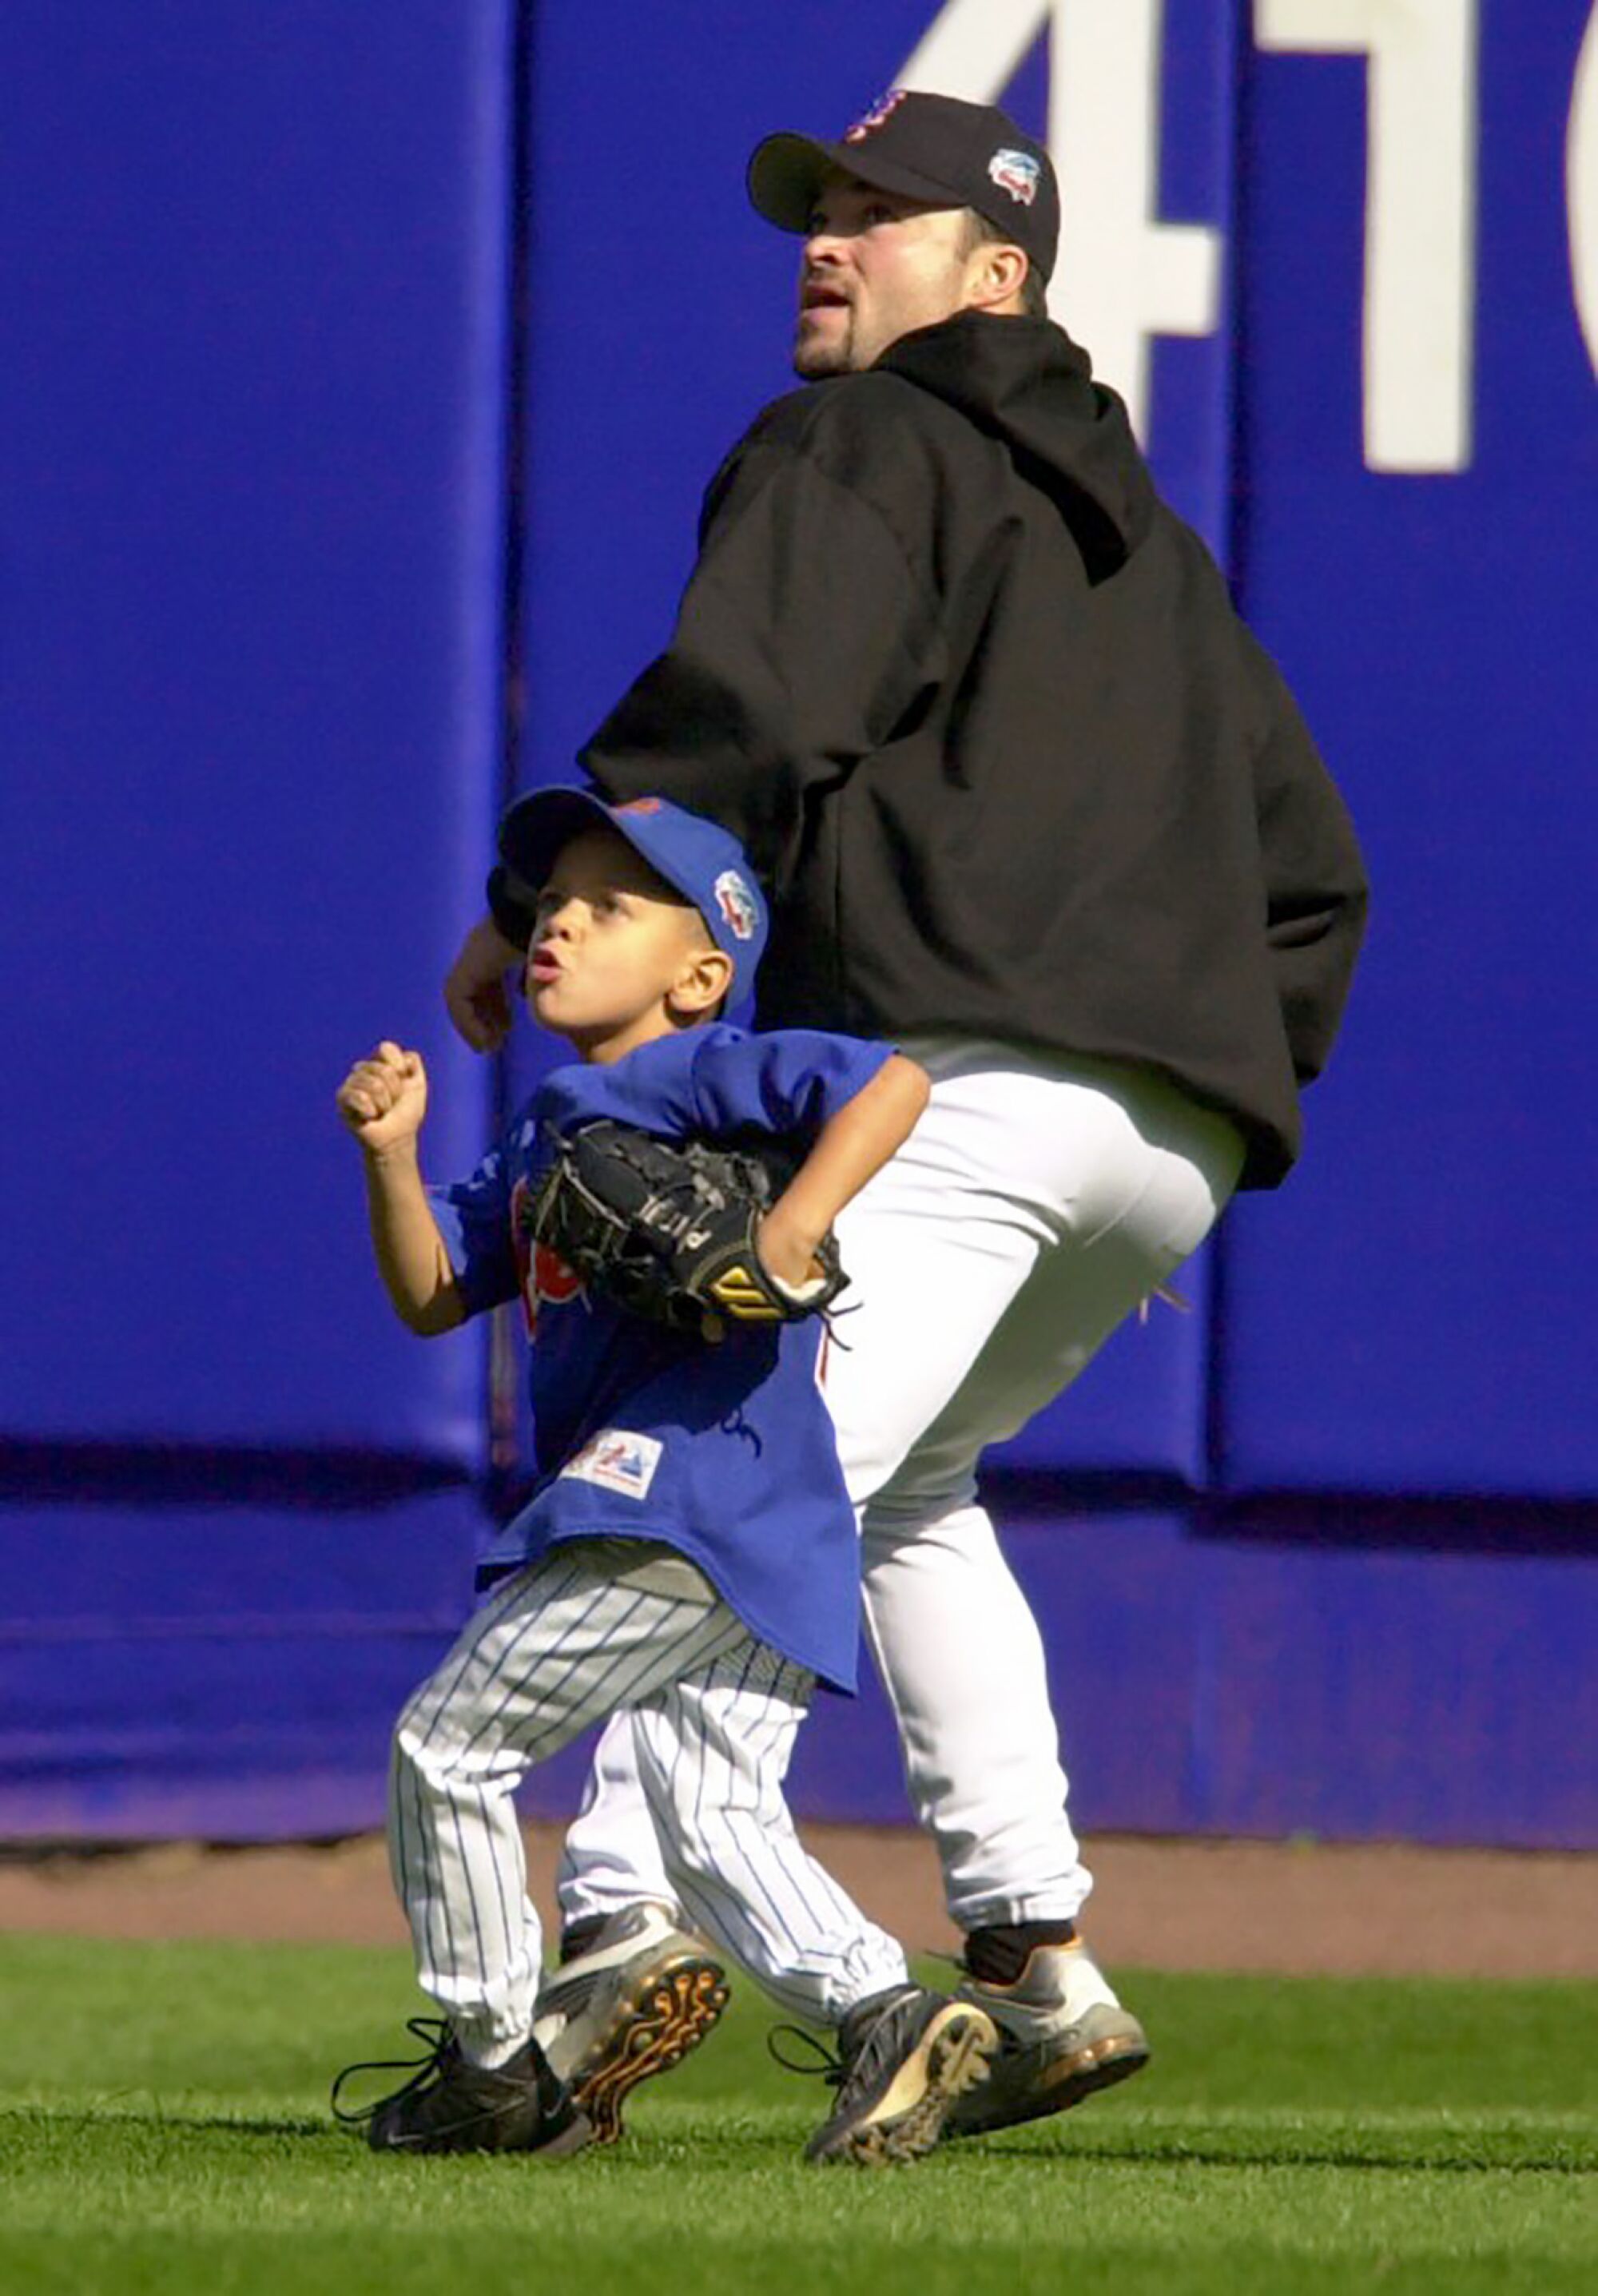 Genç bir Patrick Mahomes, 2000 yılında Mets atıcısı Mike Hampton ile bir topun izini sürer. 